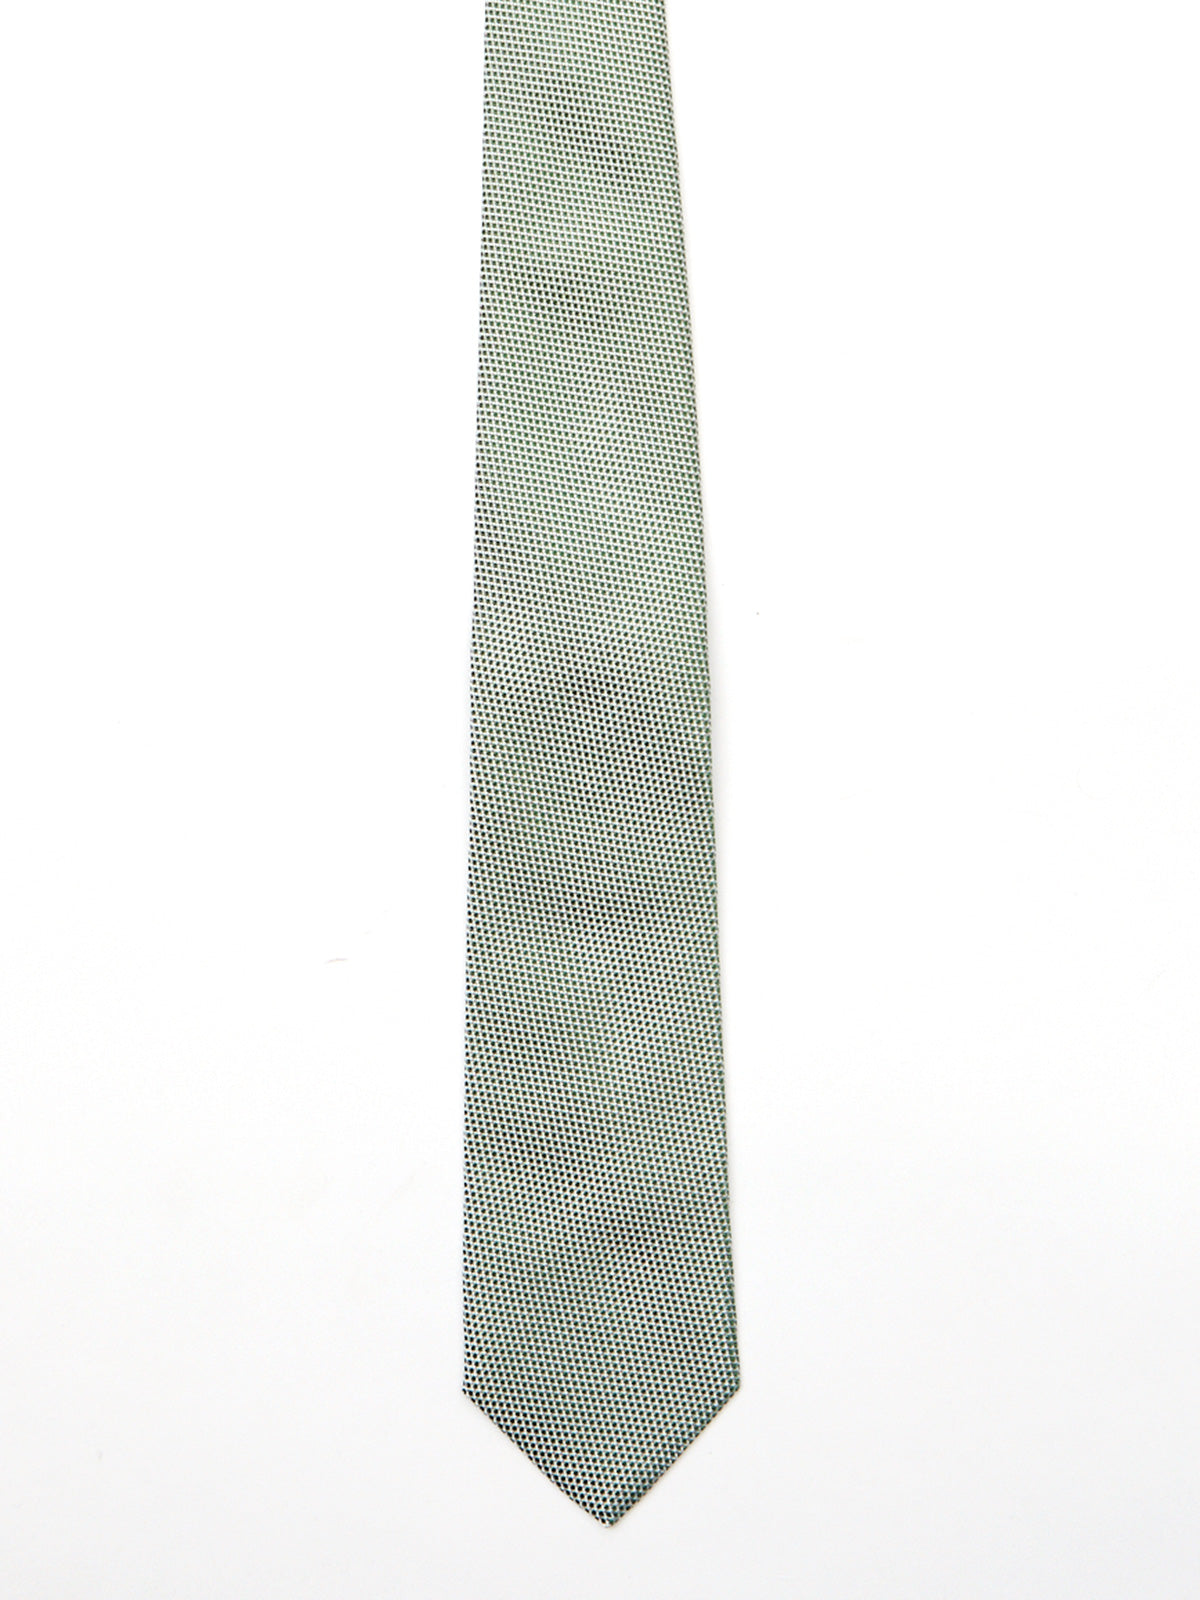 Sage Green & White Grenadine Tie